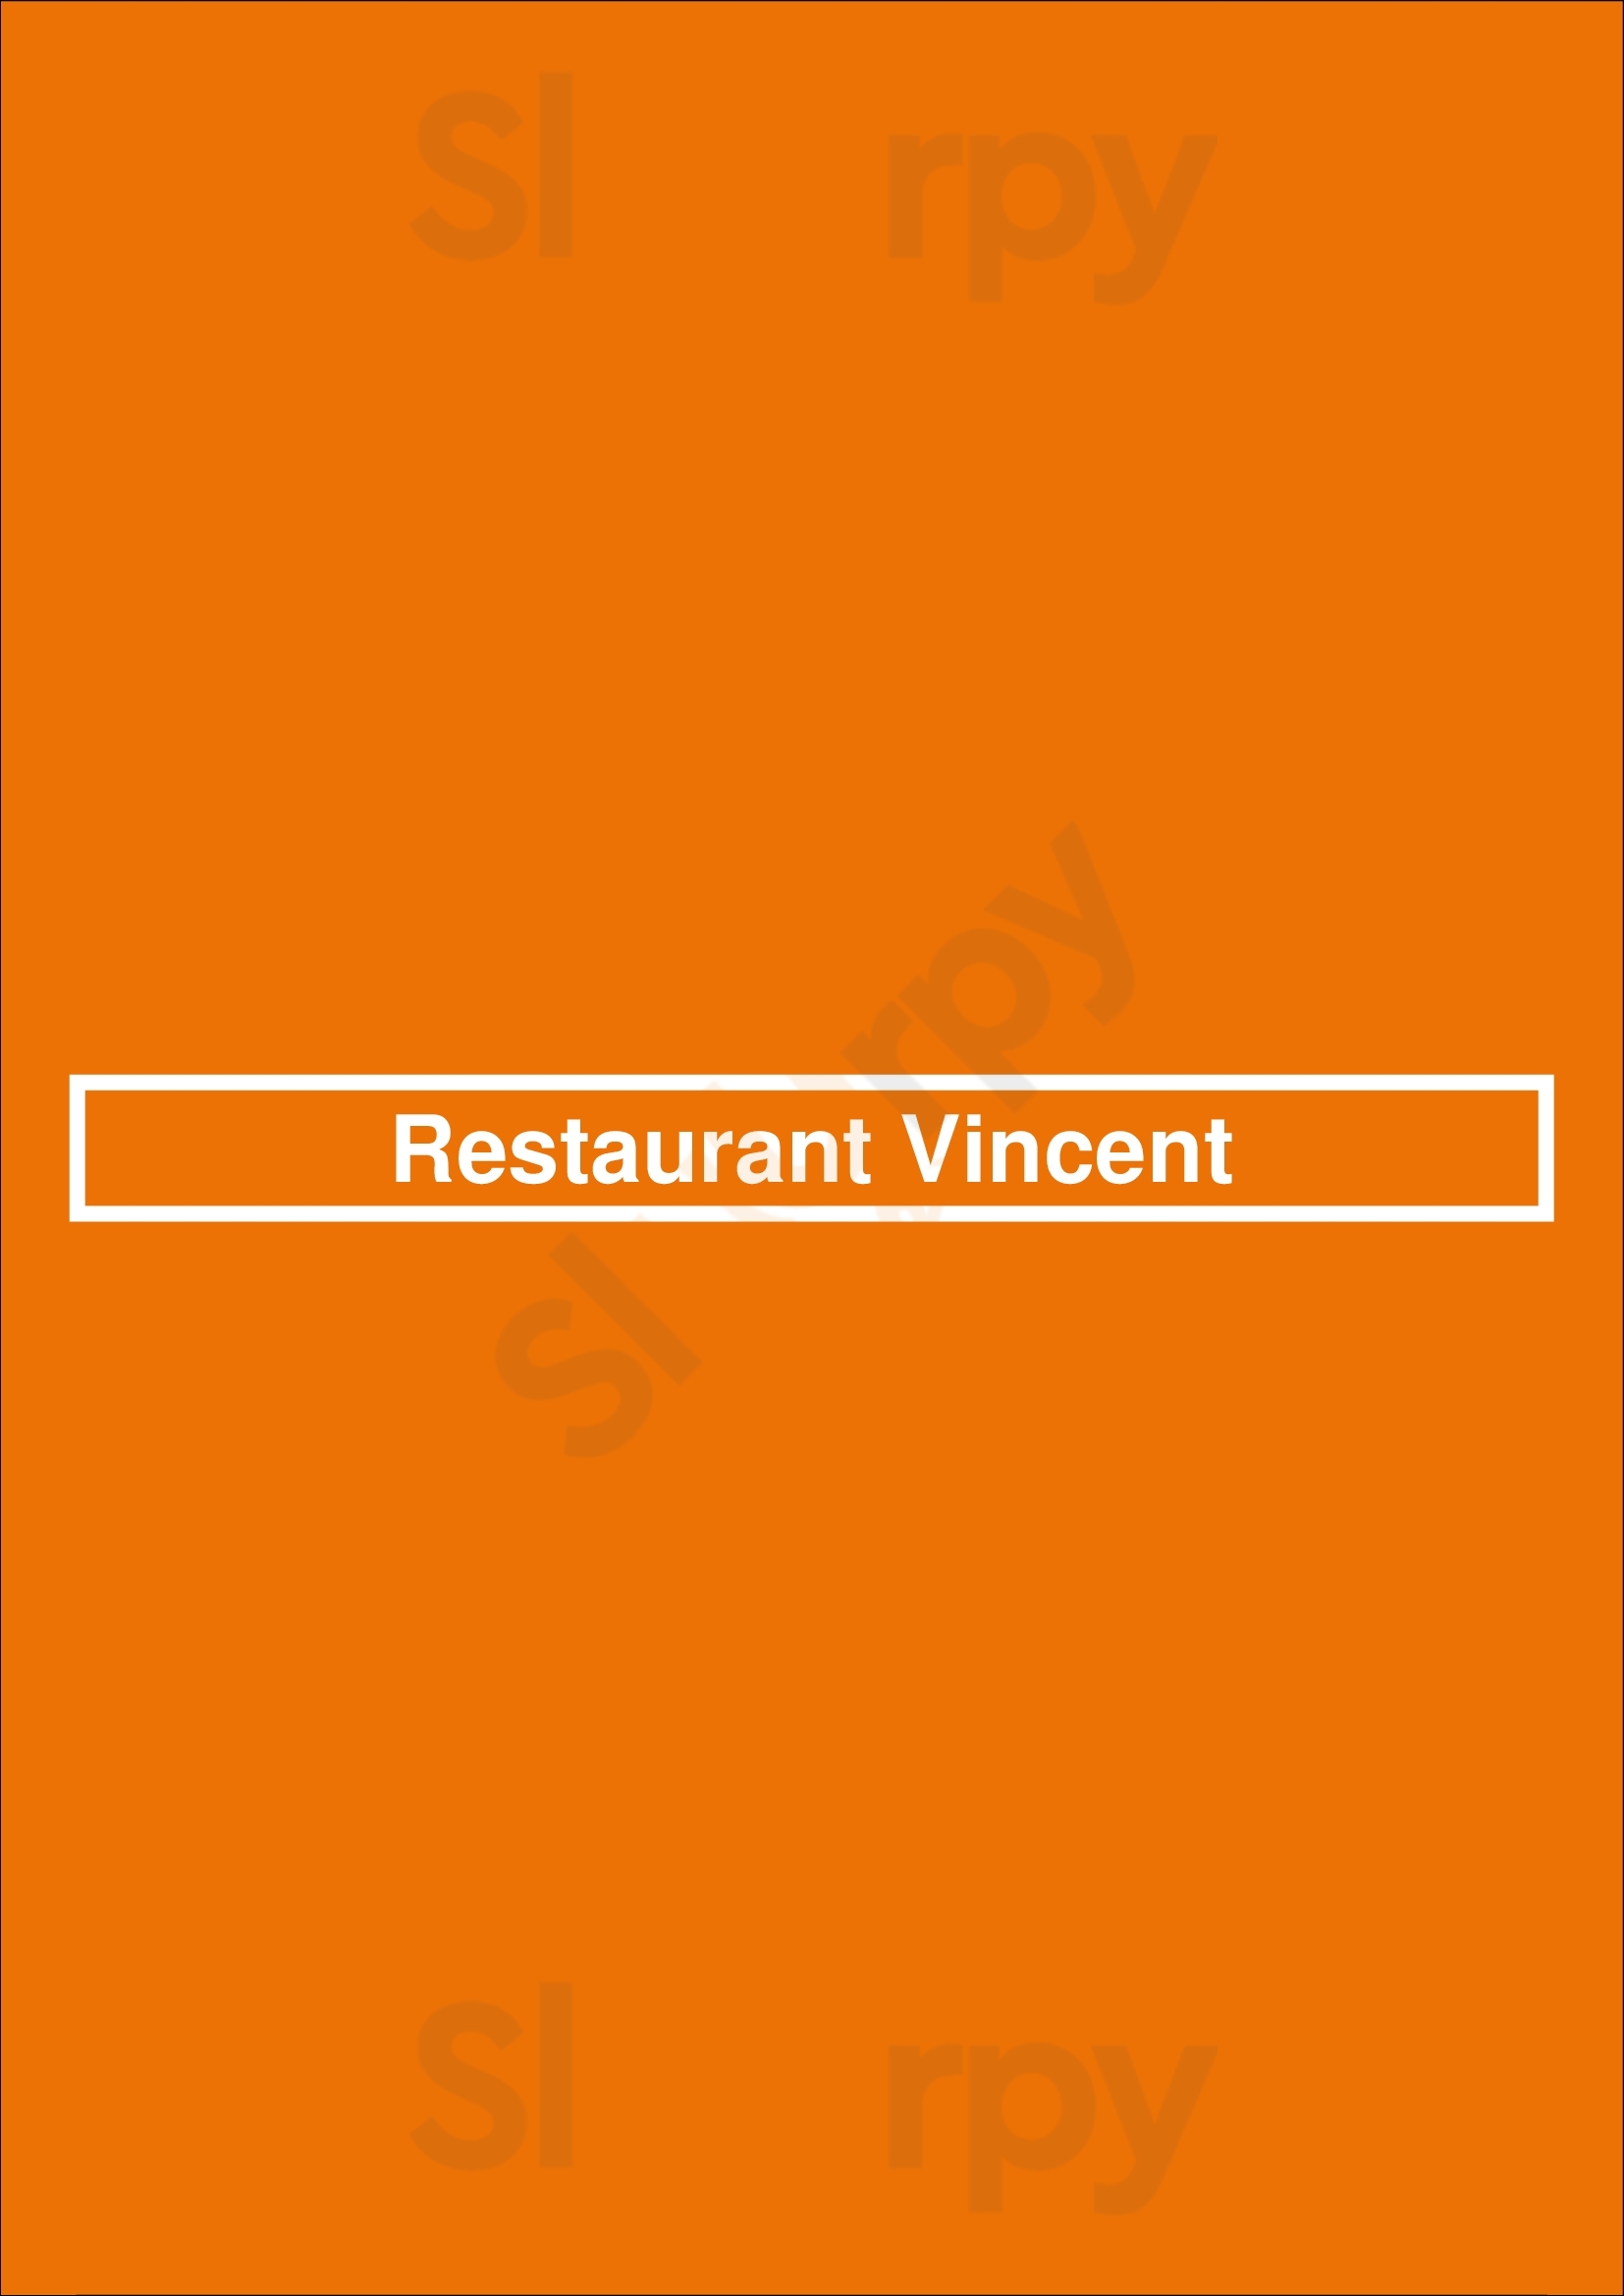 Restaurant Vincent Bruxelles Menu - 1